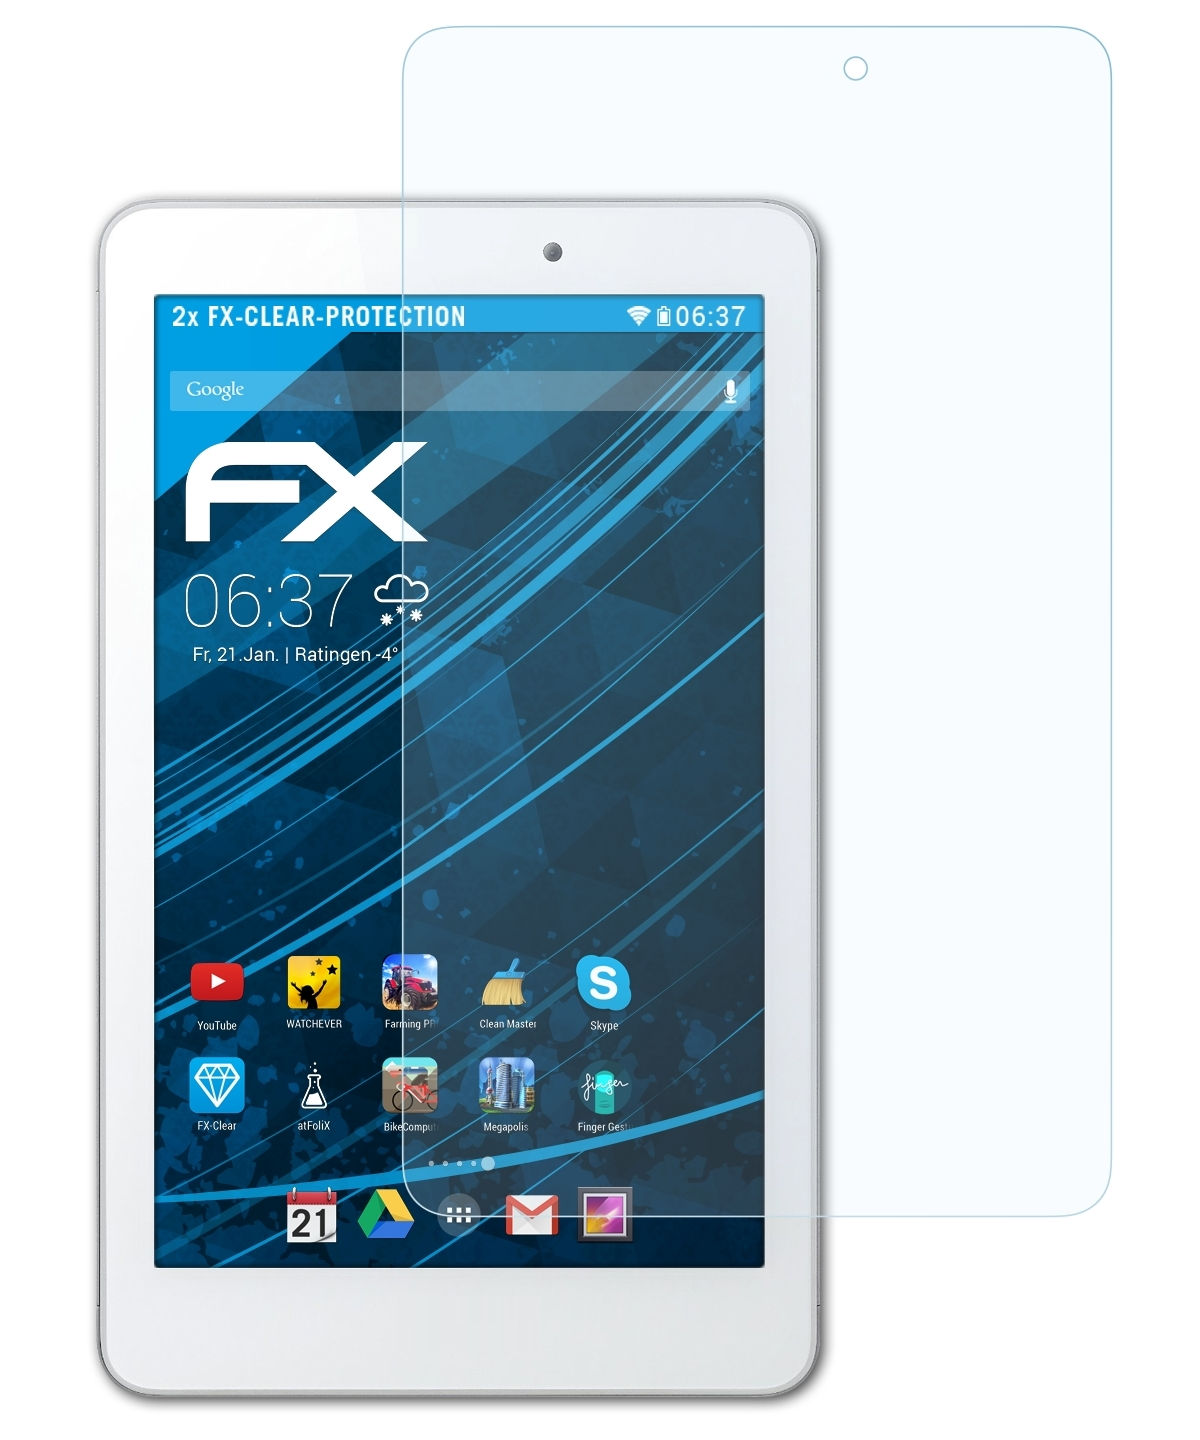 ATFOLIX 2x FX-Clear Displayschutz(für Iconia Tab 8 (A1-840FHD)) Acer